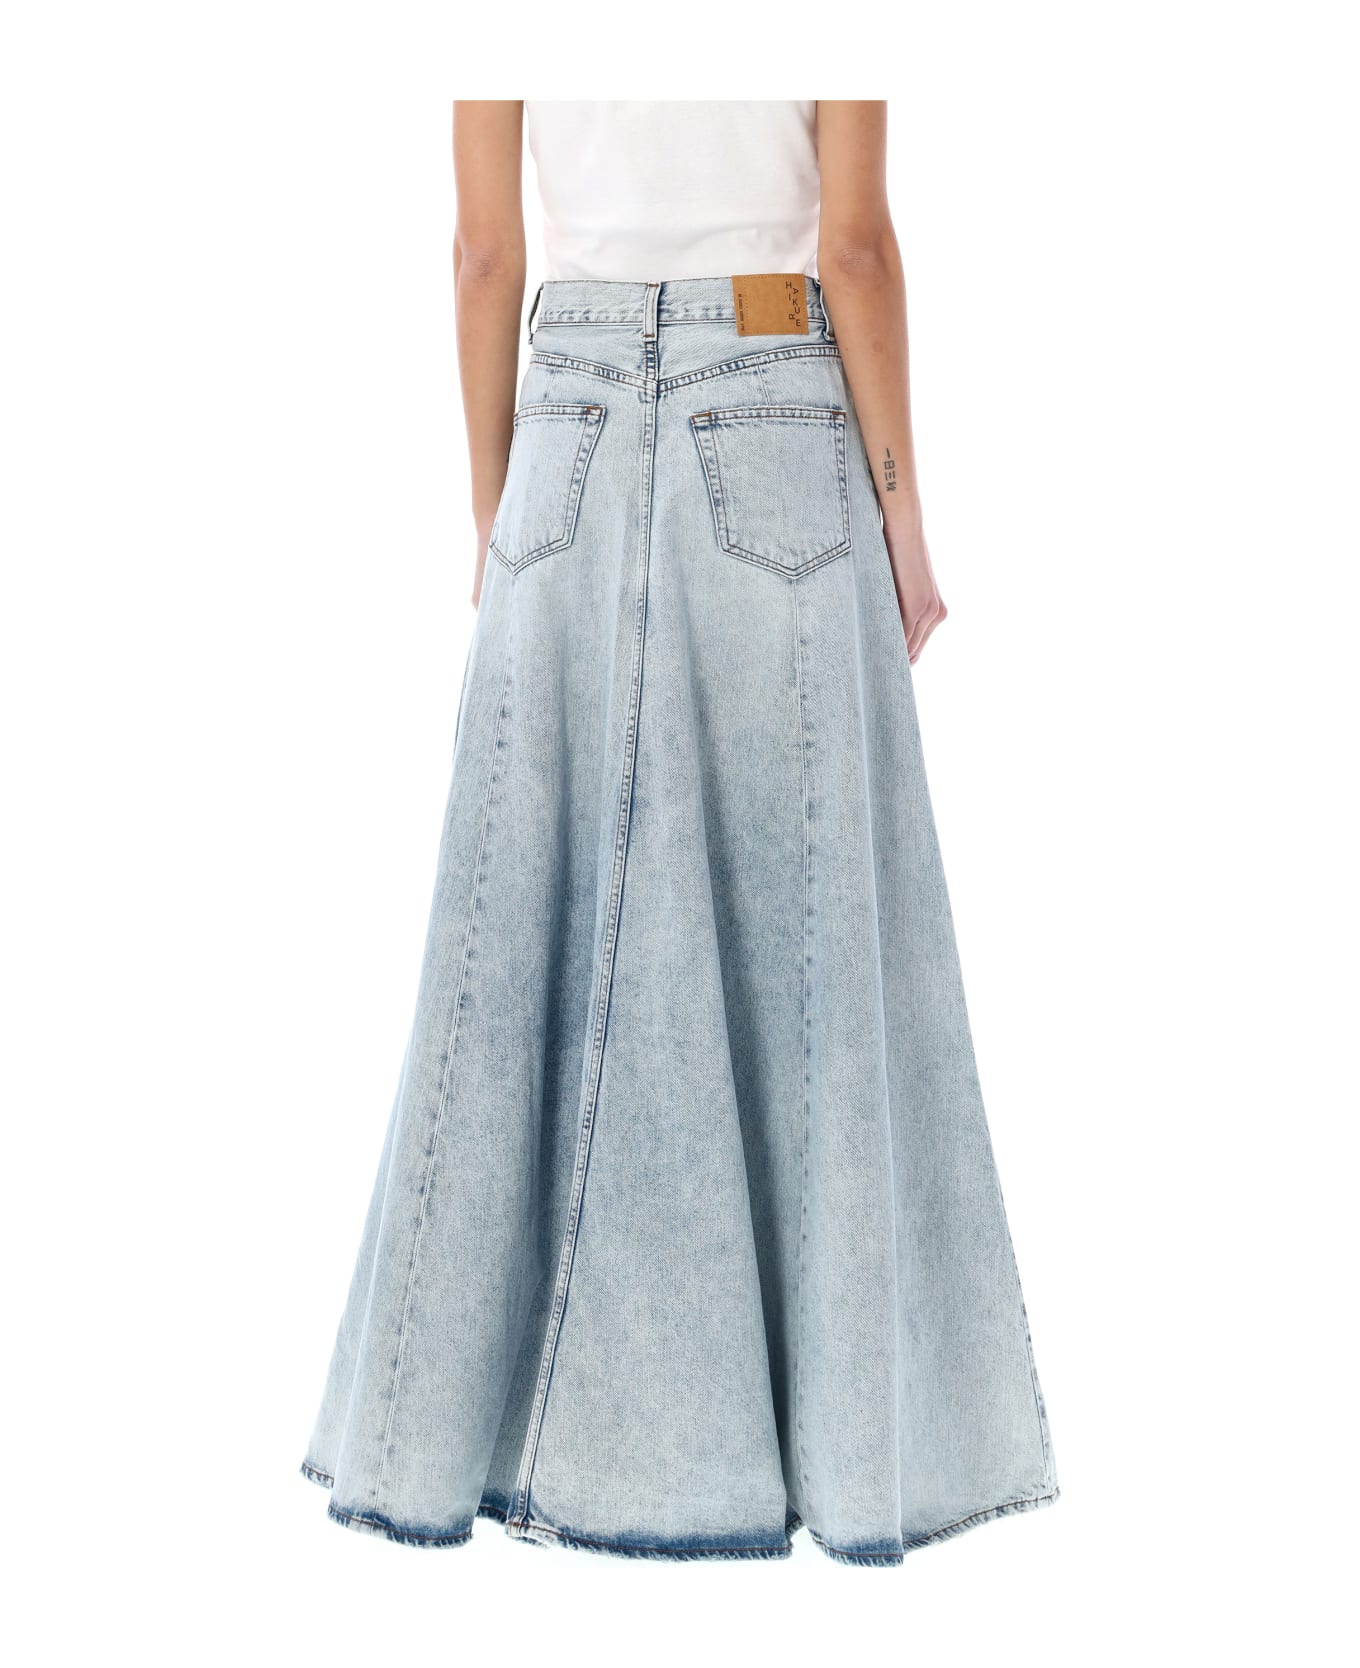 Haikure Serenity Long Skirt - STROMBOLI BLUE スカート